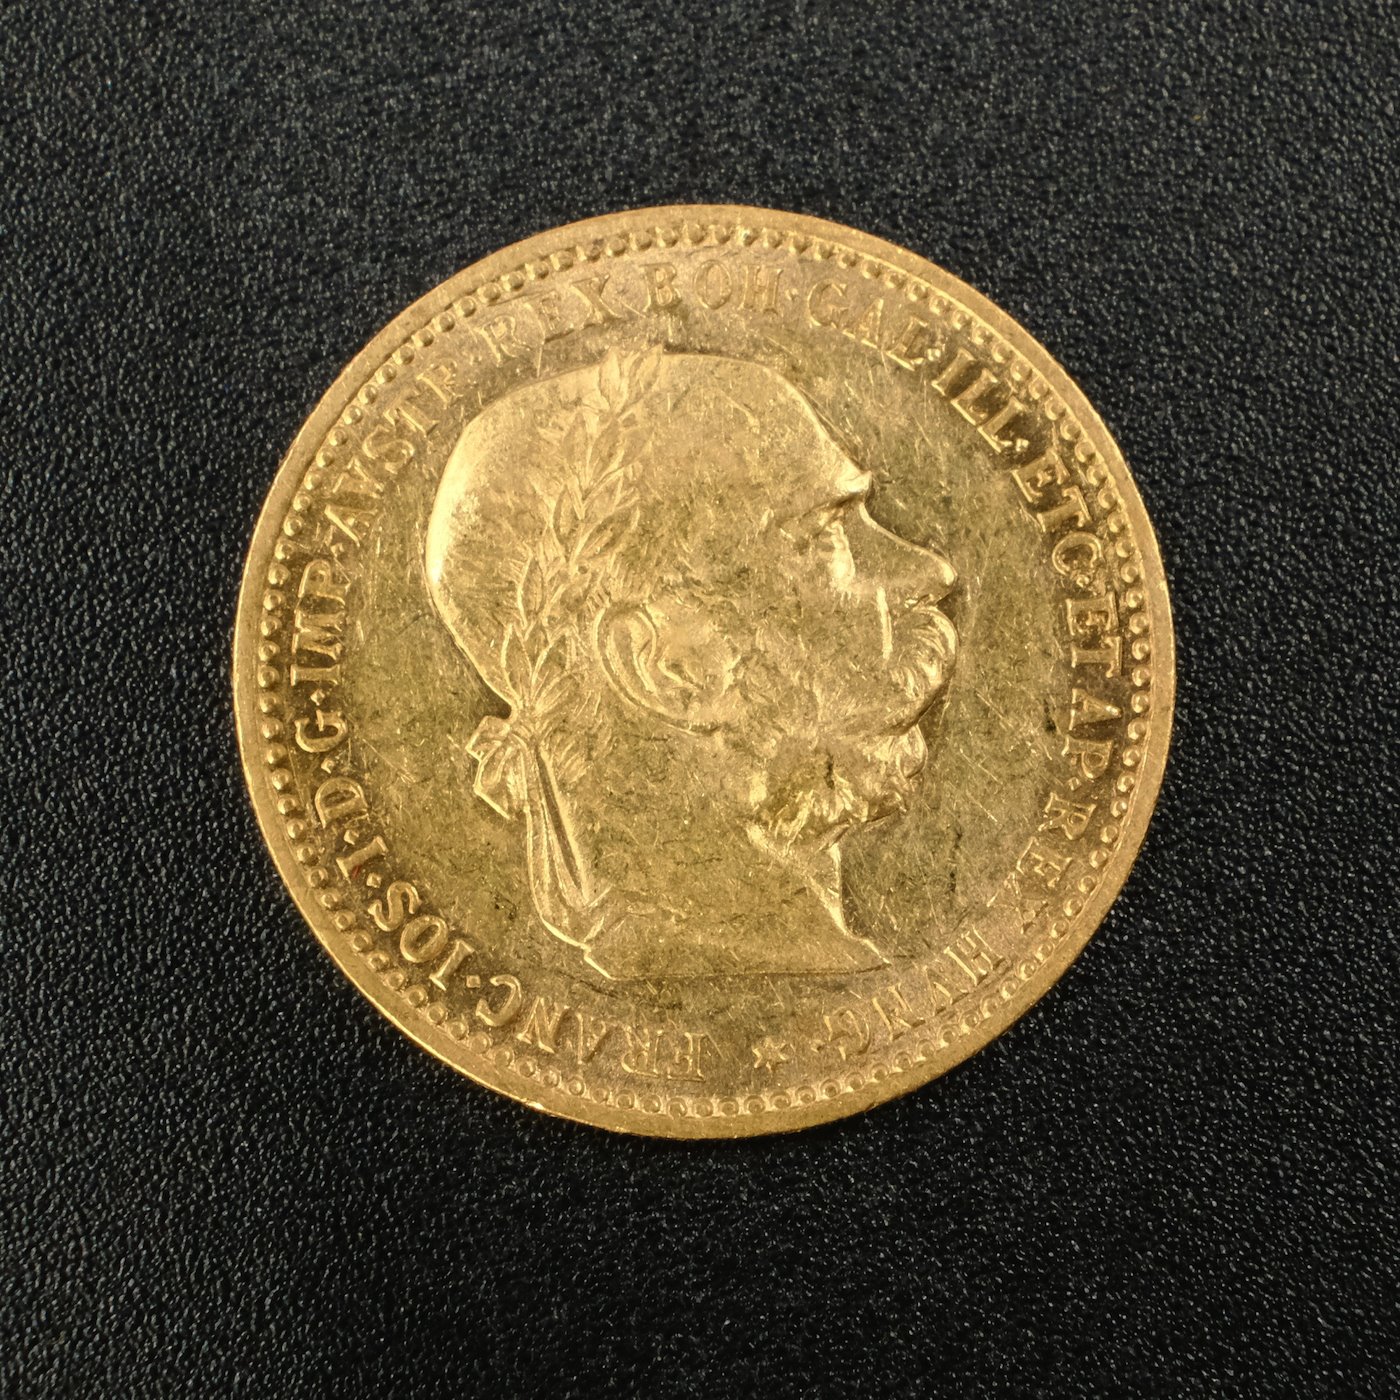 Mince - Rakousko Uhersko zlatá 10 Koruna 1906 rakouská, zlato 900/1000, hrubá hmotnost mince 3,387g